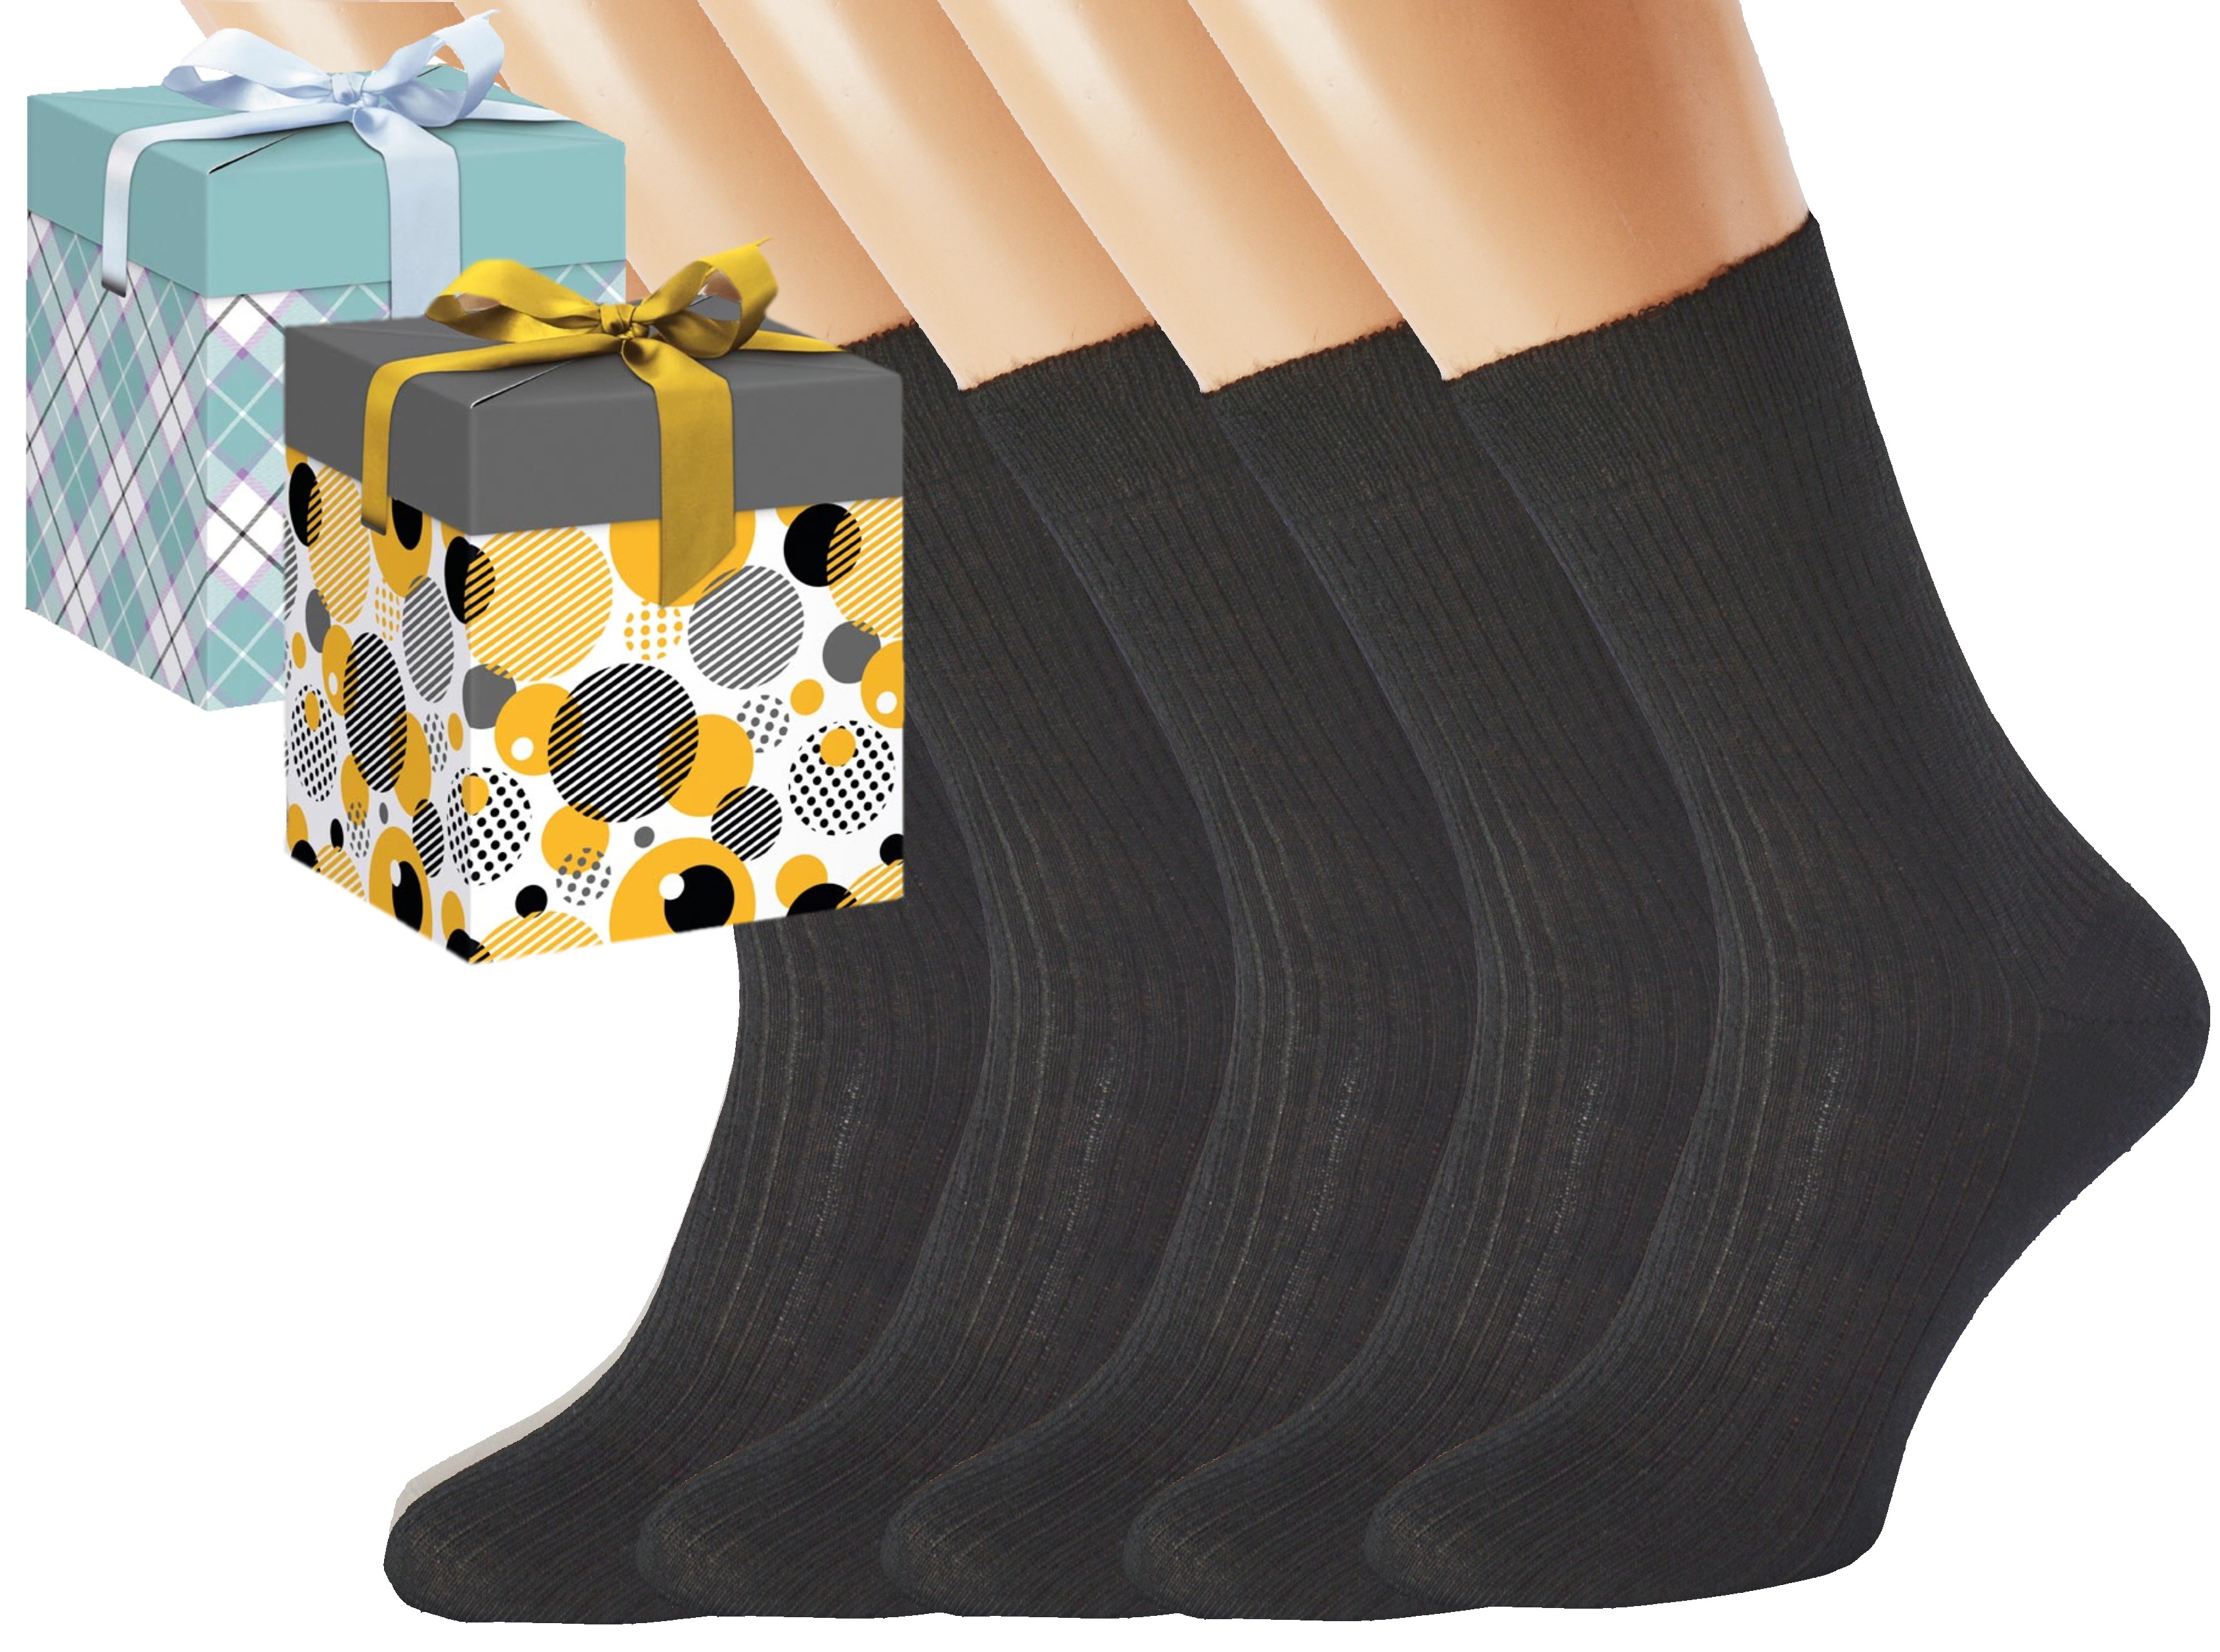 Dárkové balení merino zdravotních ponožek LUKÁŠ KUKS Barva: Černé, Velikost: EUR 46-48 (UK 11-12), Zvolte variantu dárkového balení: Mint kostkovaná